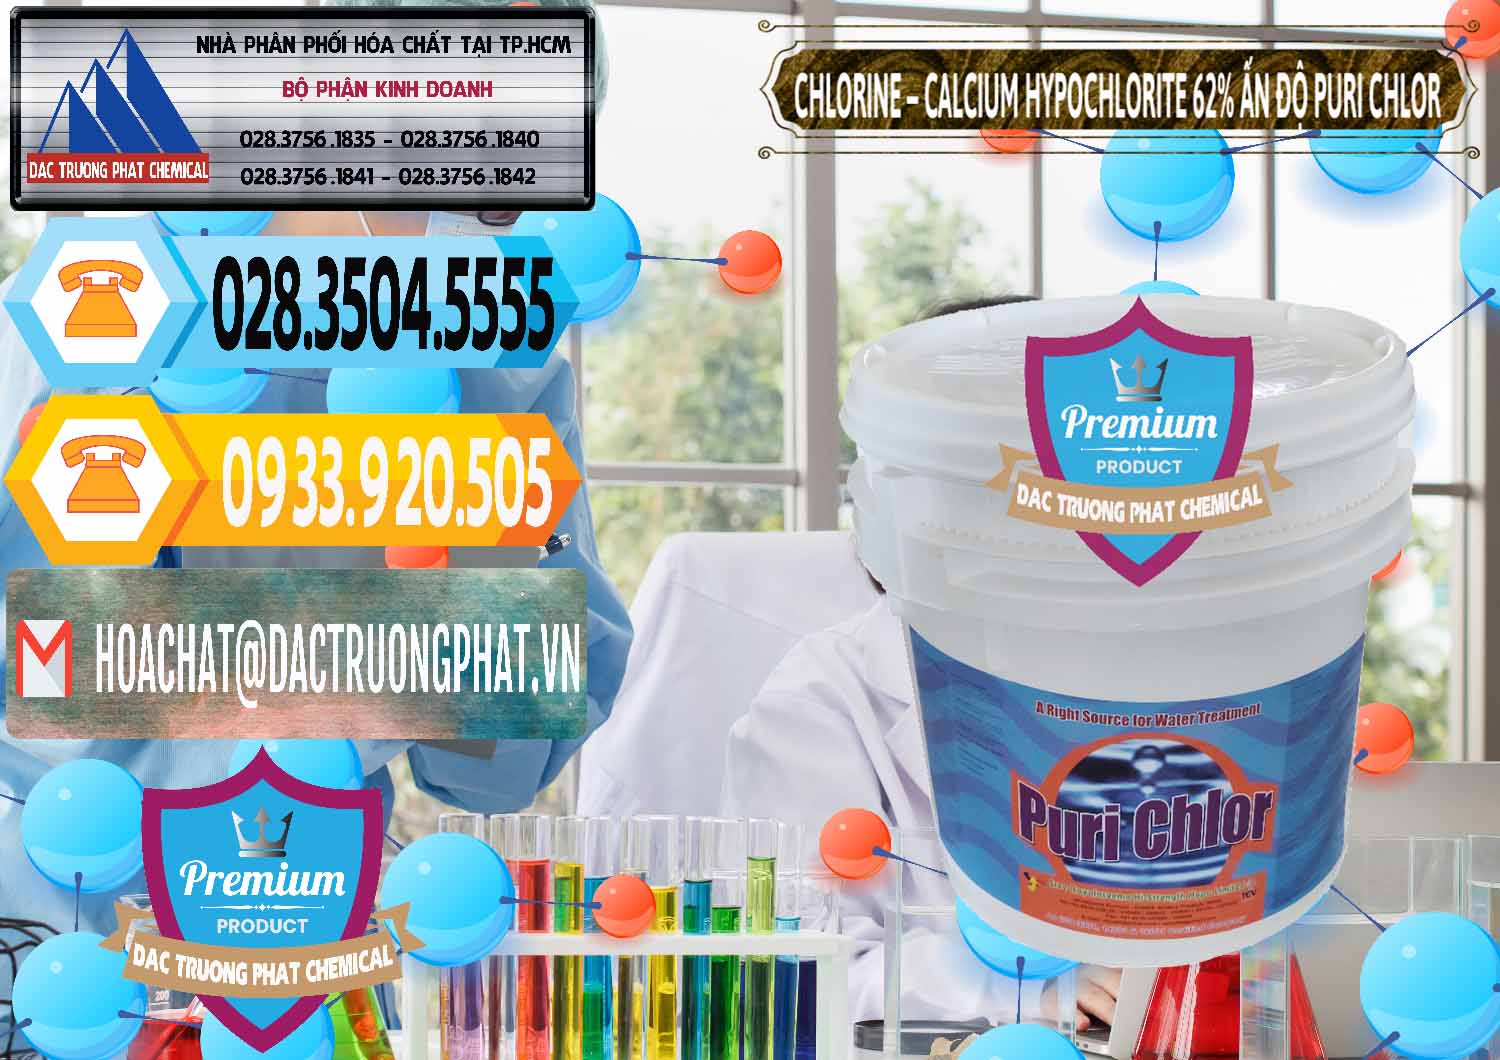 Cty chuyên bán & cung cấp Chlorine – Clorin 62% Puri Chlo Ấn Độ India - 0052 - Nơi phân phối _ cung ứng hóa chất tại TP.HCM - hoachattayrua.net